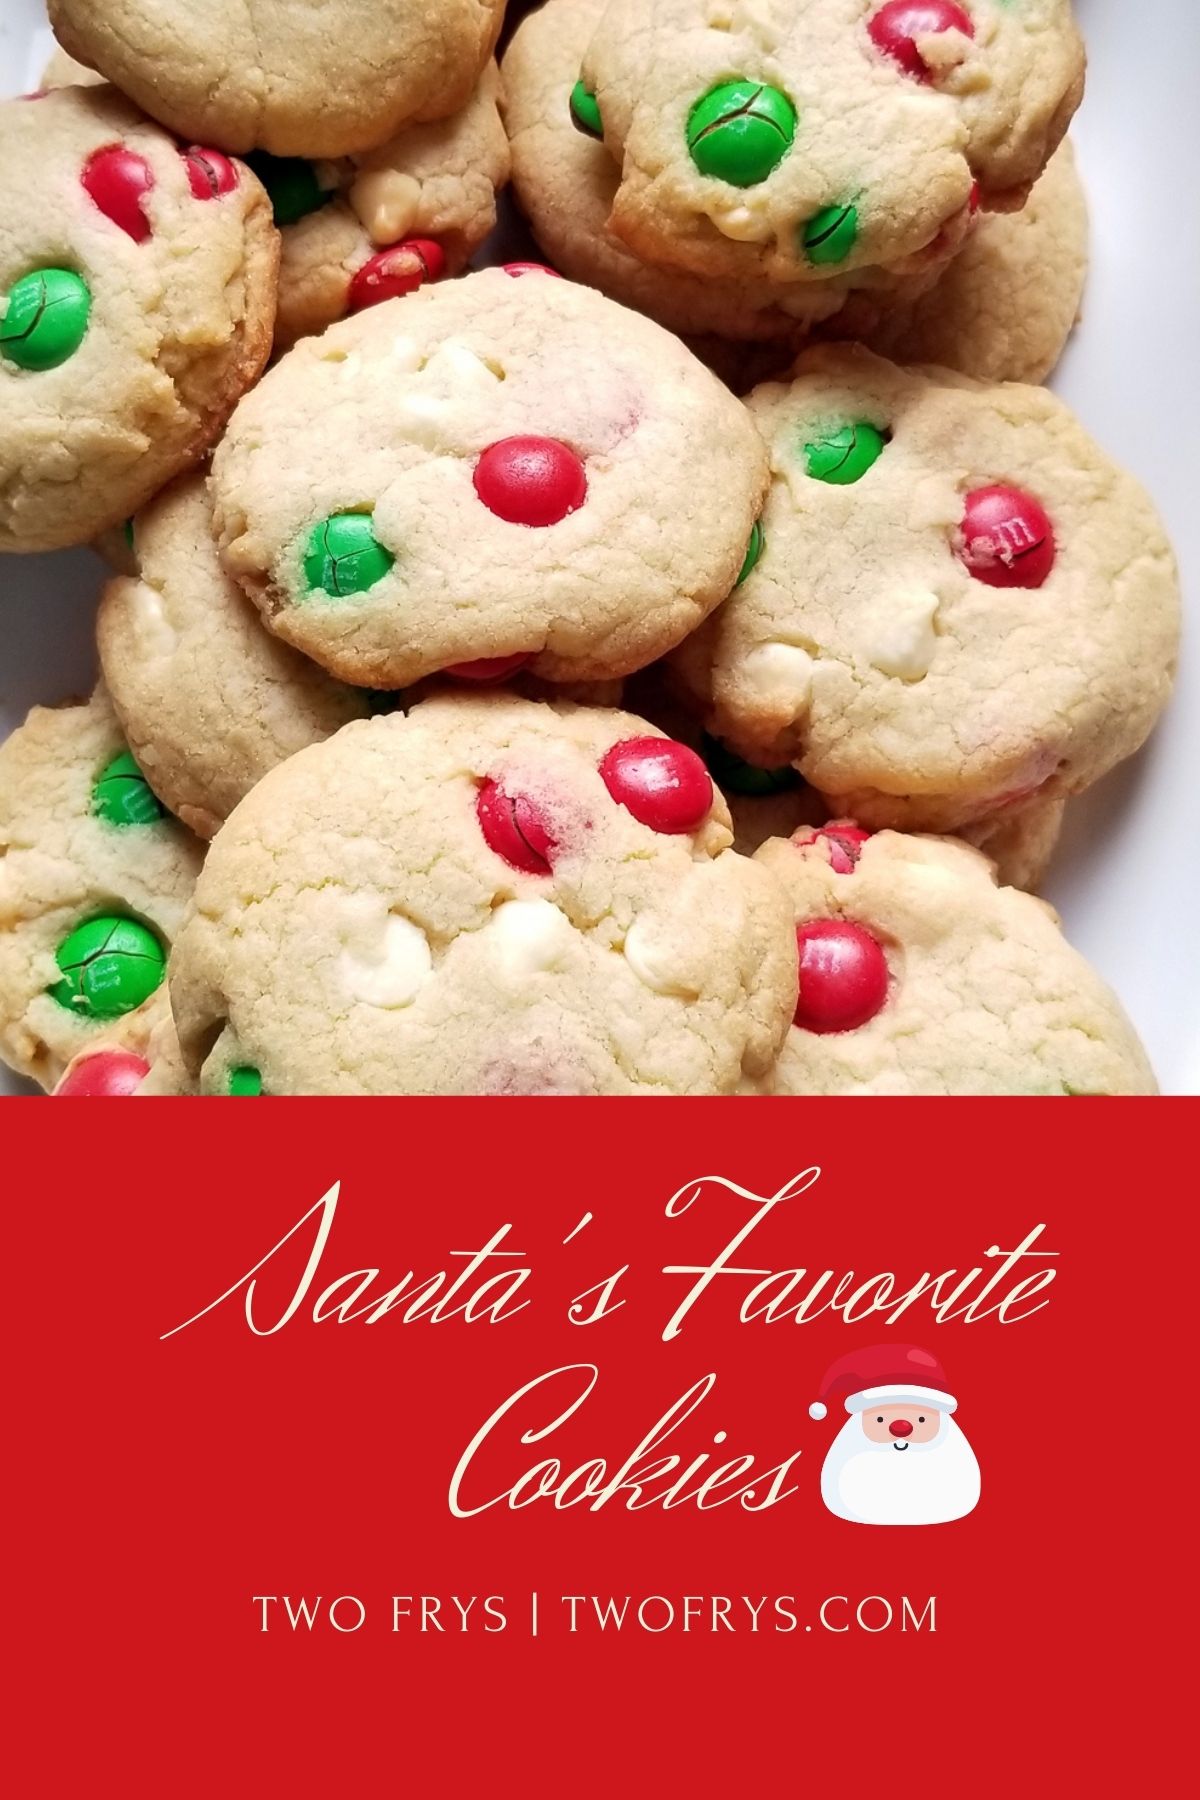 Two Frys: Santa's Favorite Cookies